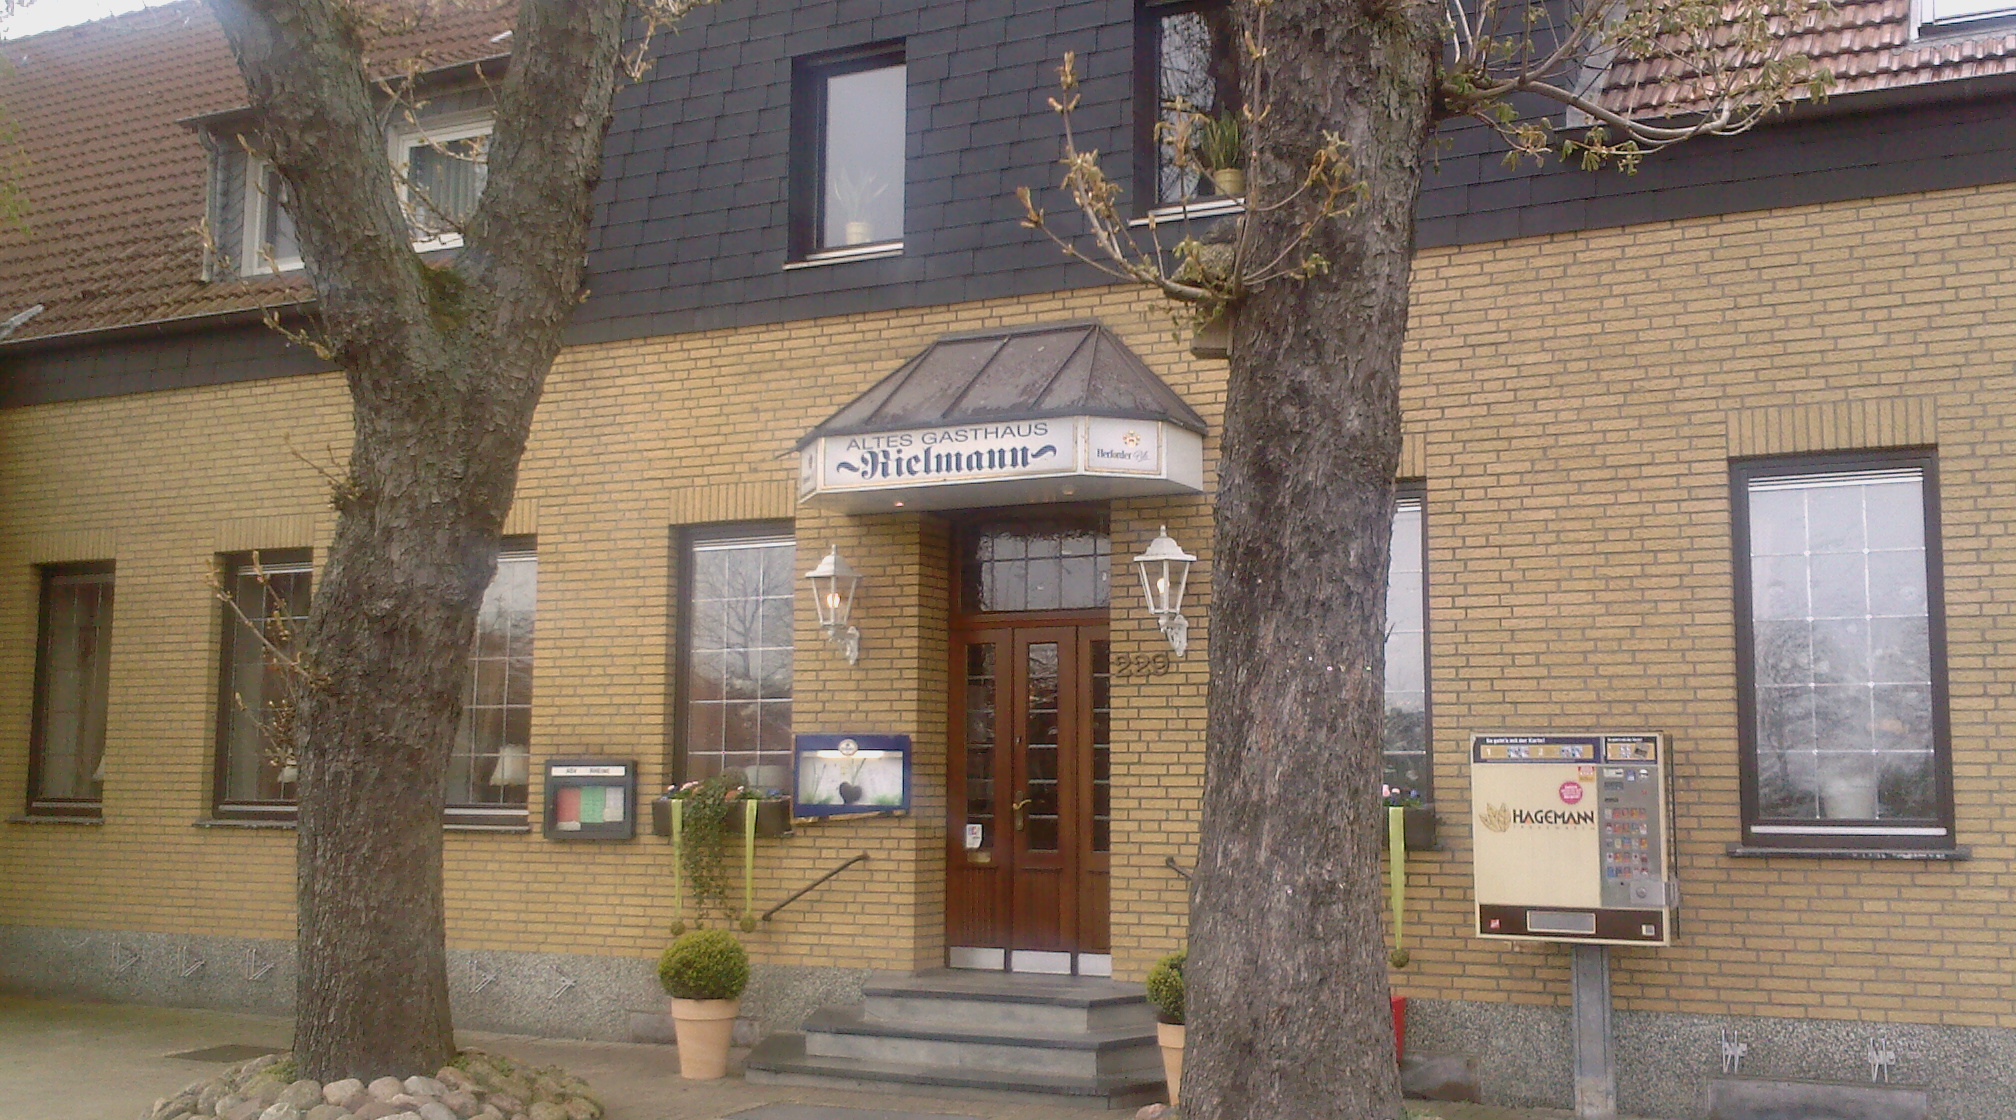 Bild 1 Altes Gasthaus Rielmann in Rheine